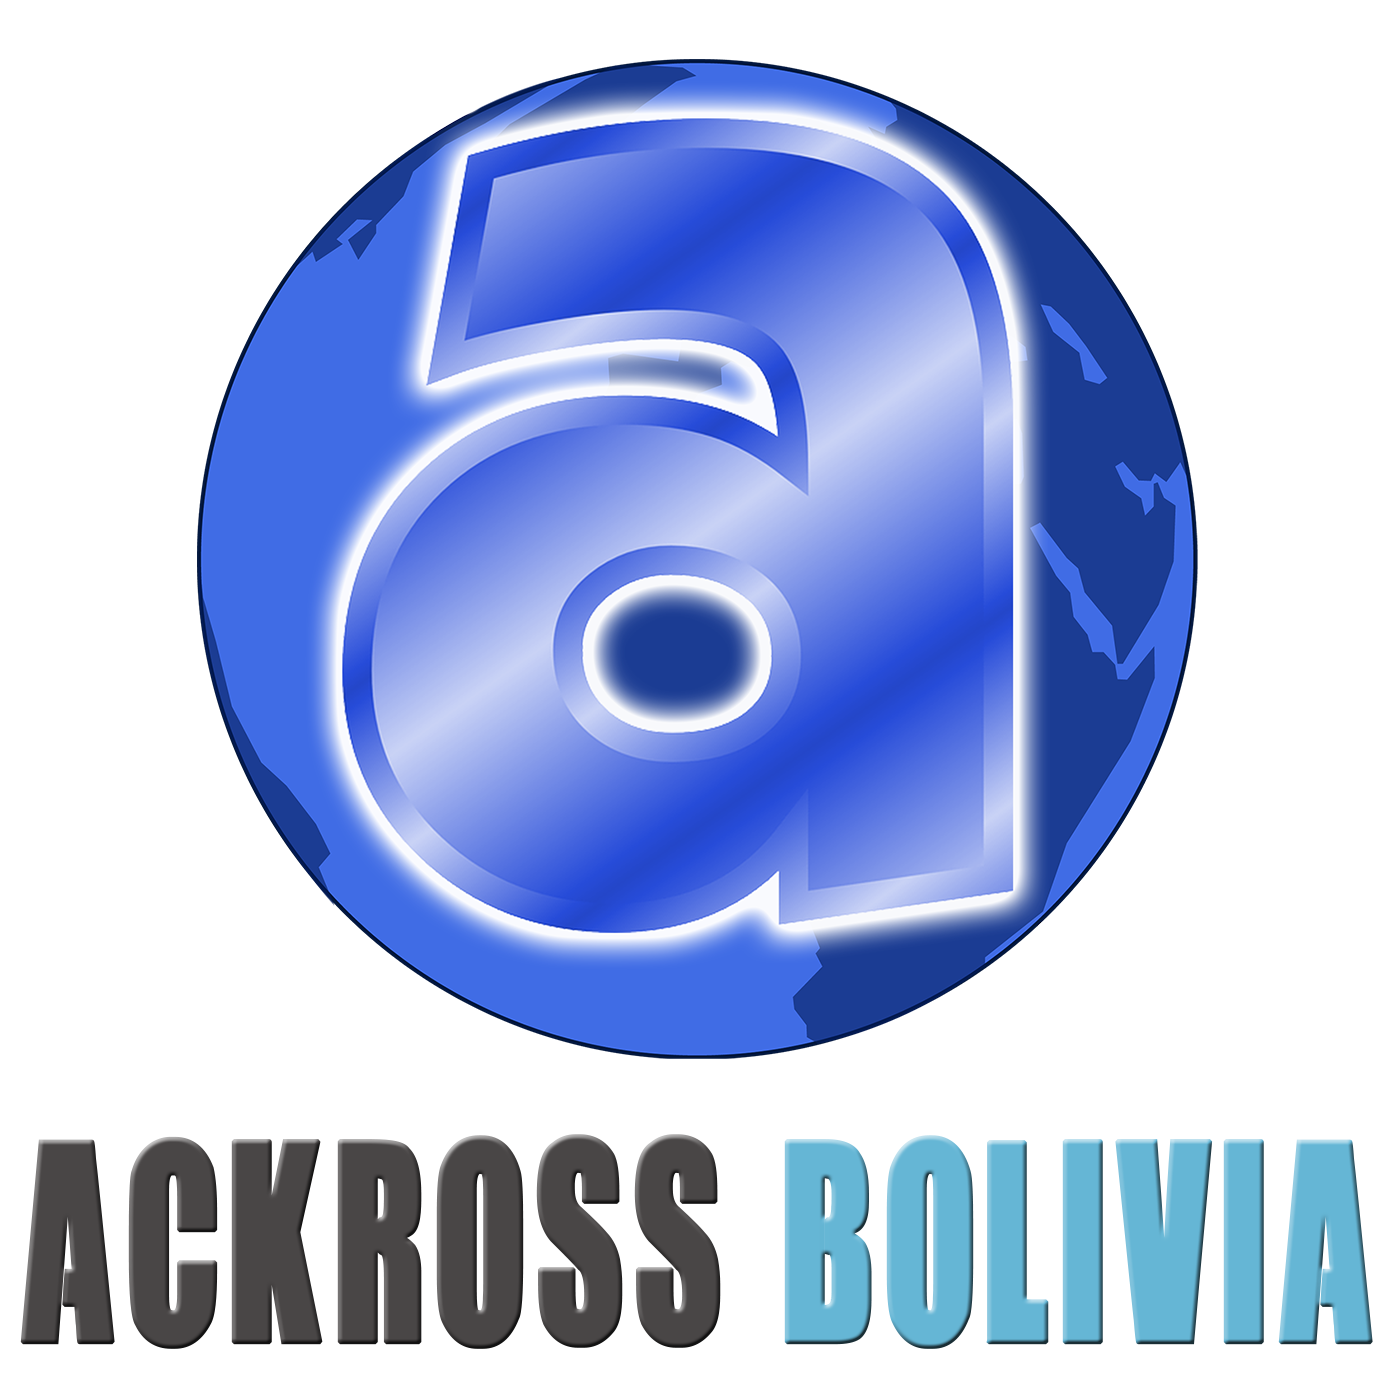 ACKROSS BOLIVIA